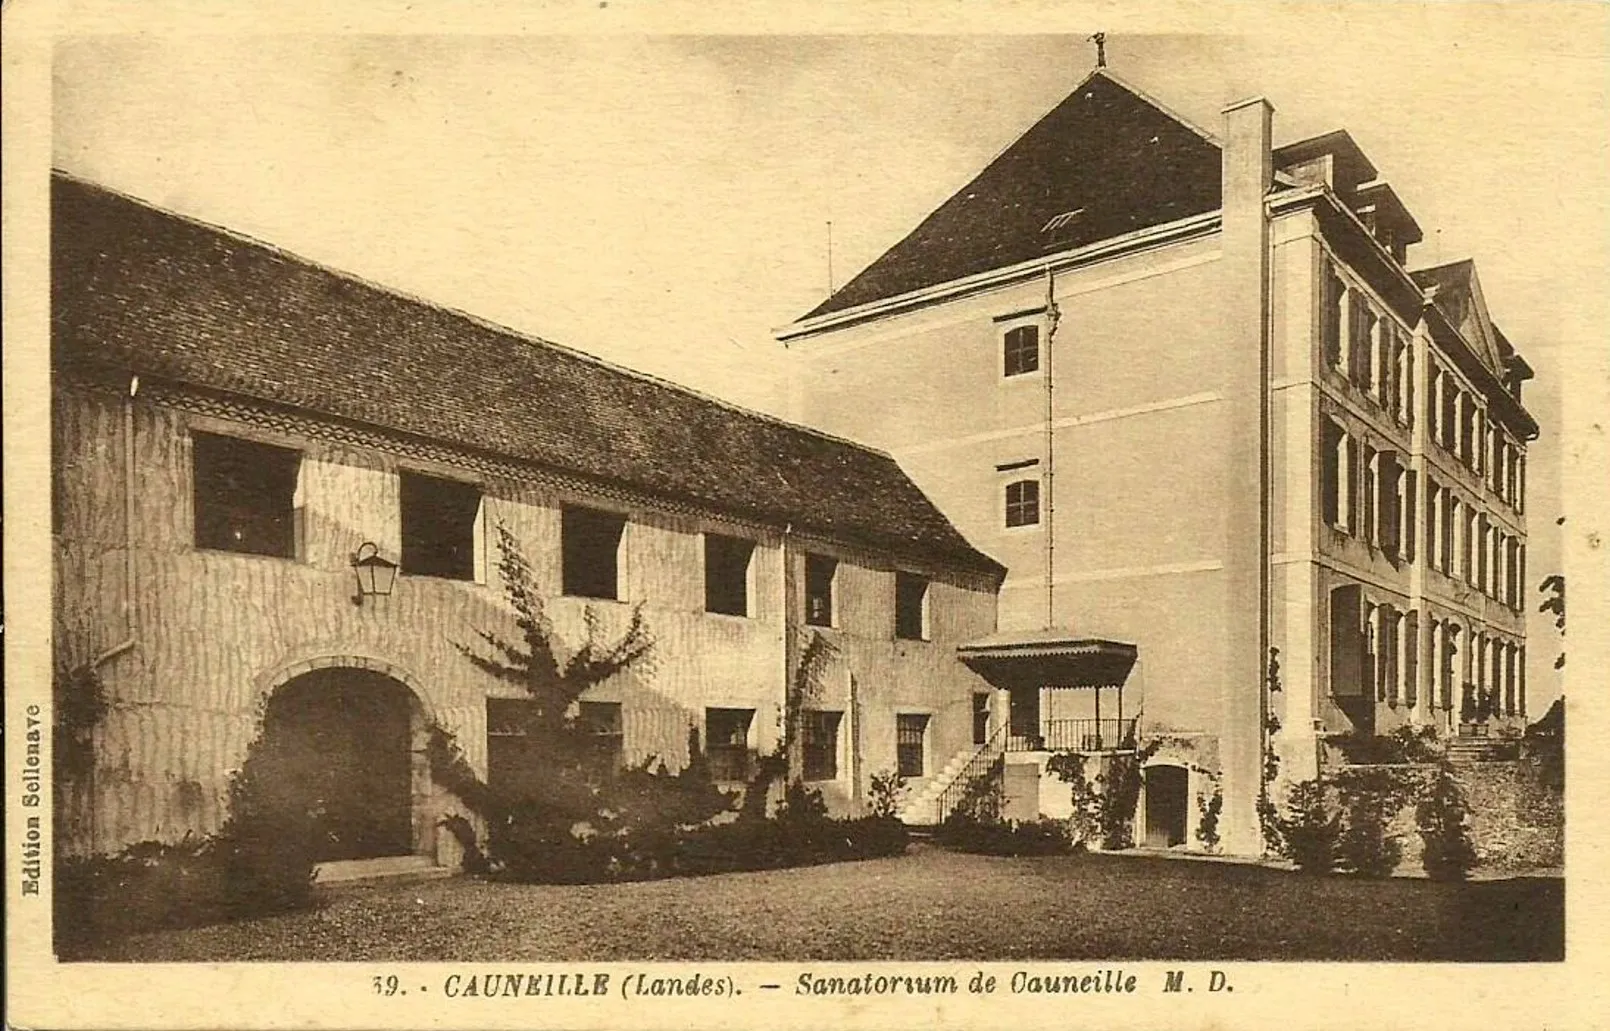 Photo showing: Cauneille (Landes) – Sanatorium